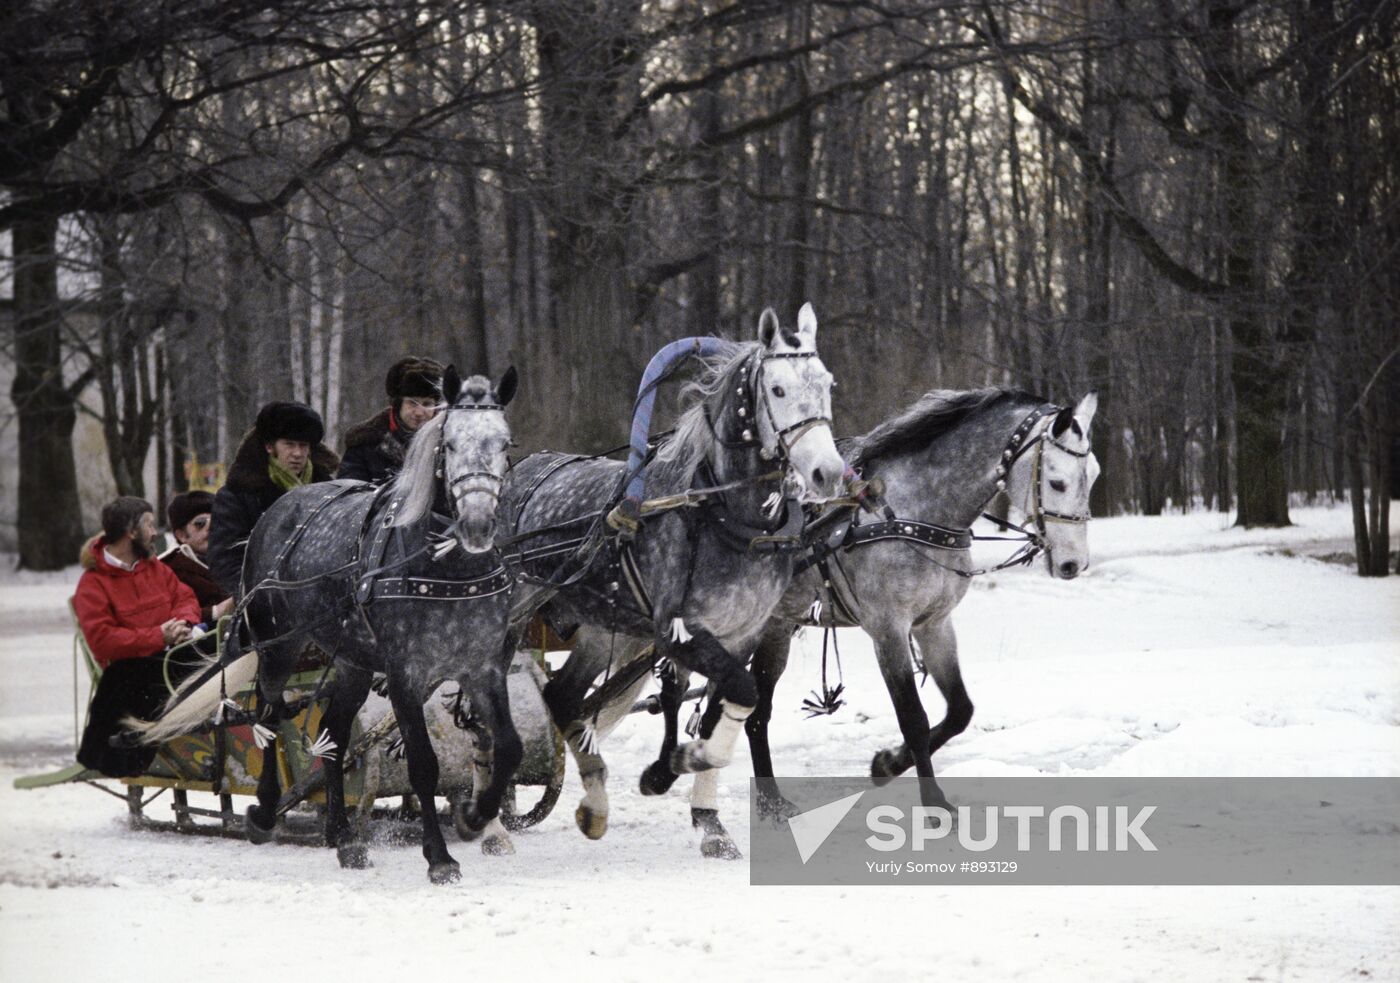 Russian Winter Farewell Festival